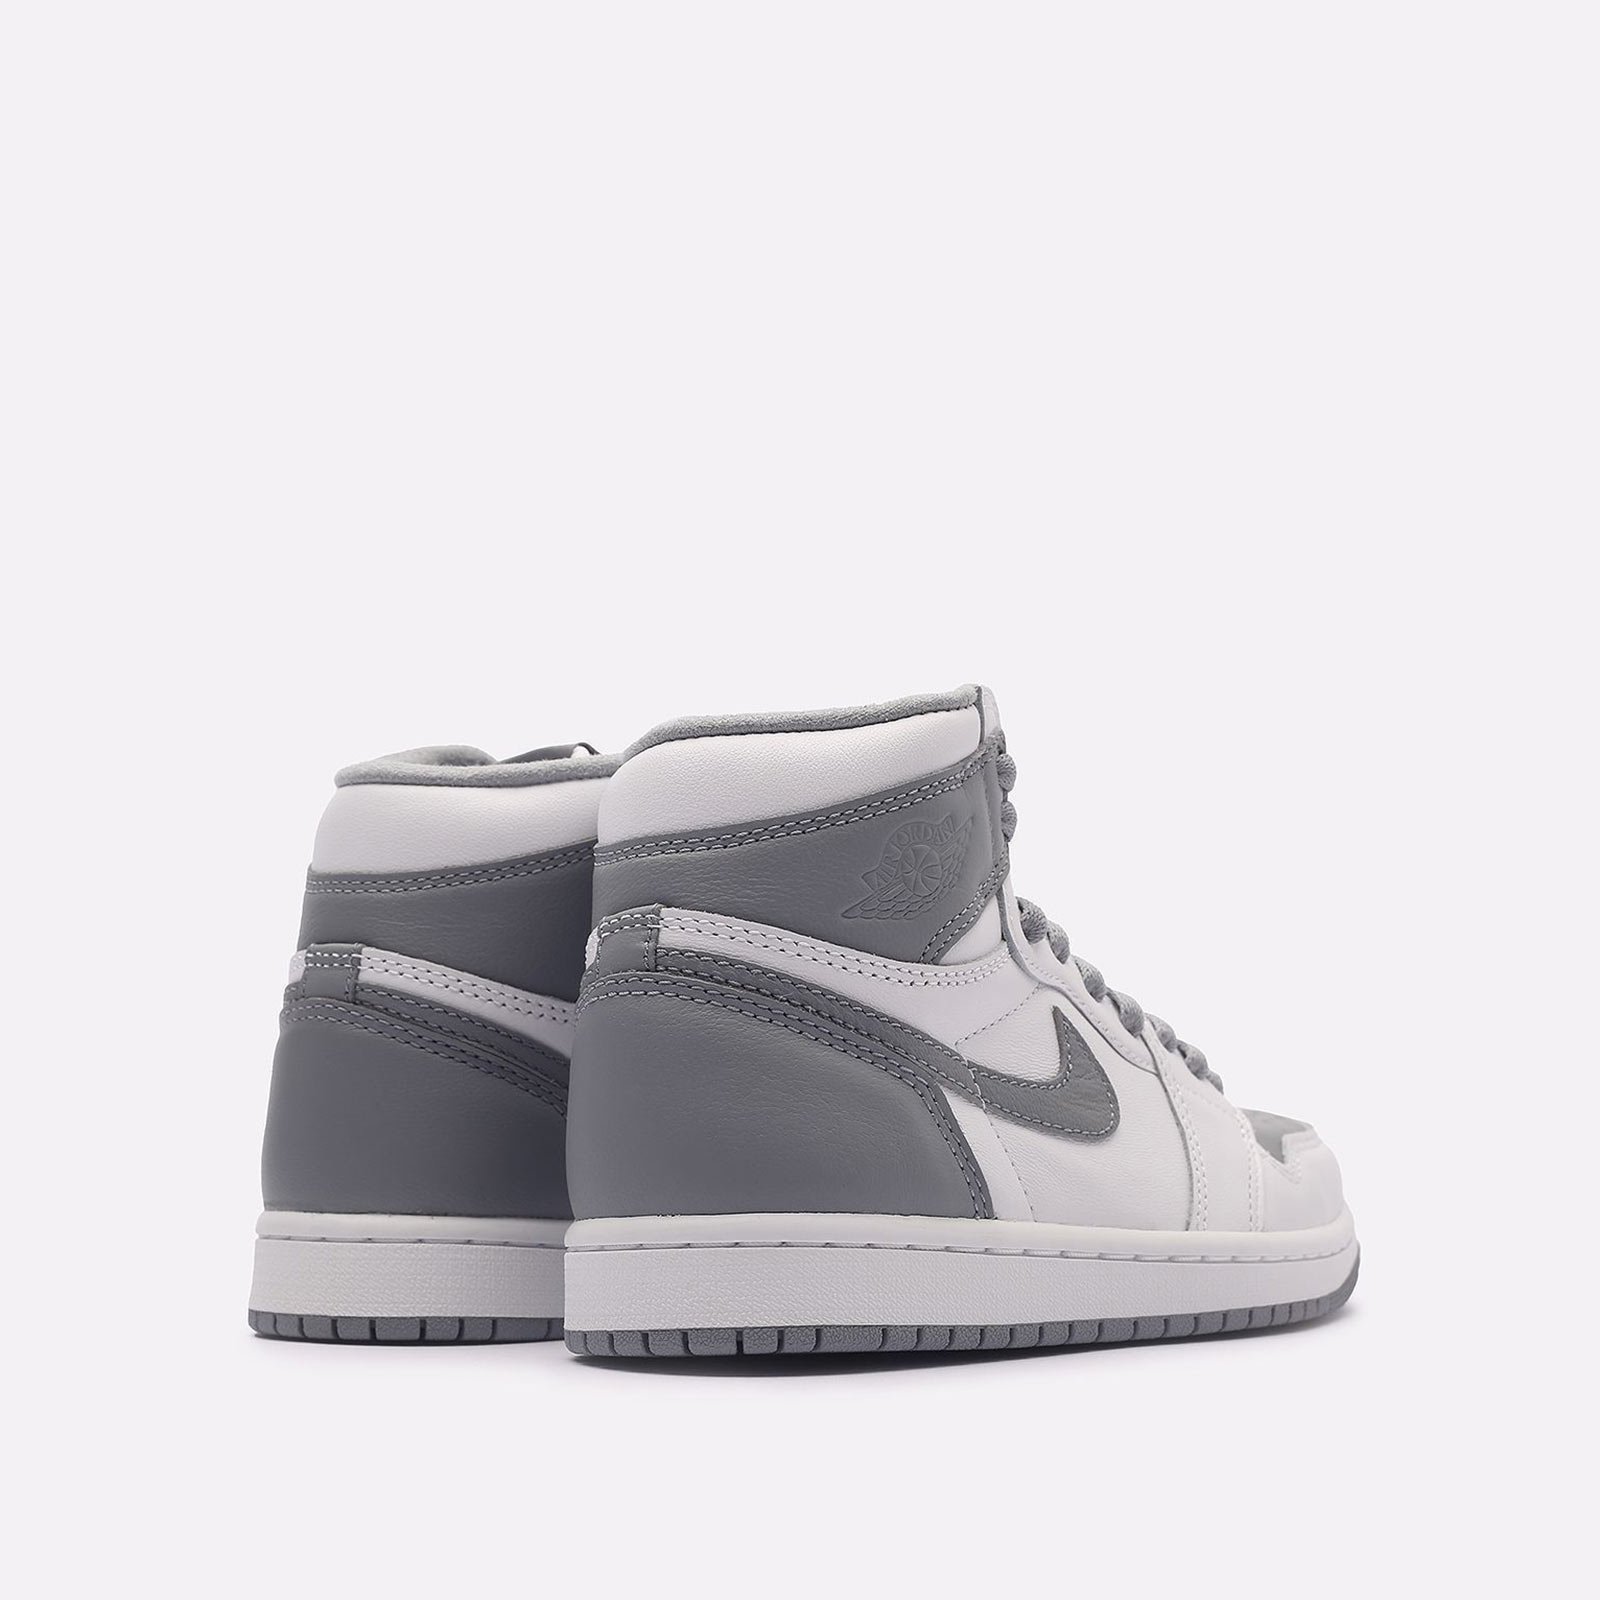 мужские белые кроссовки Jordan 1 Retro High OG 555088-037* - цена, описание, фото 3